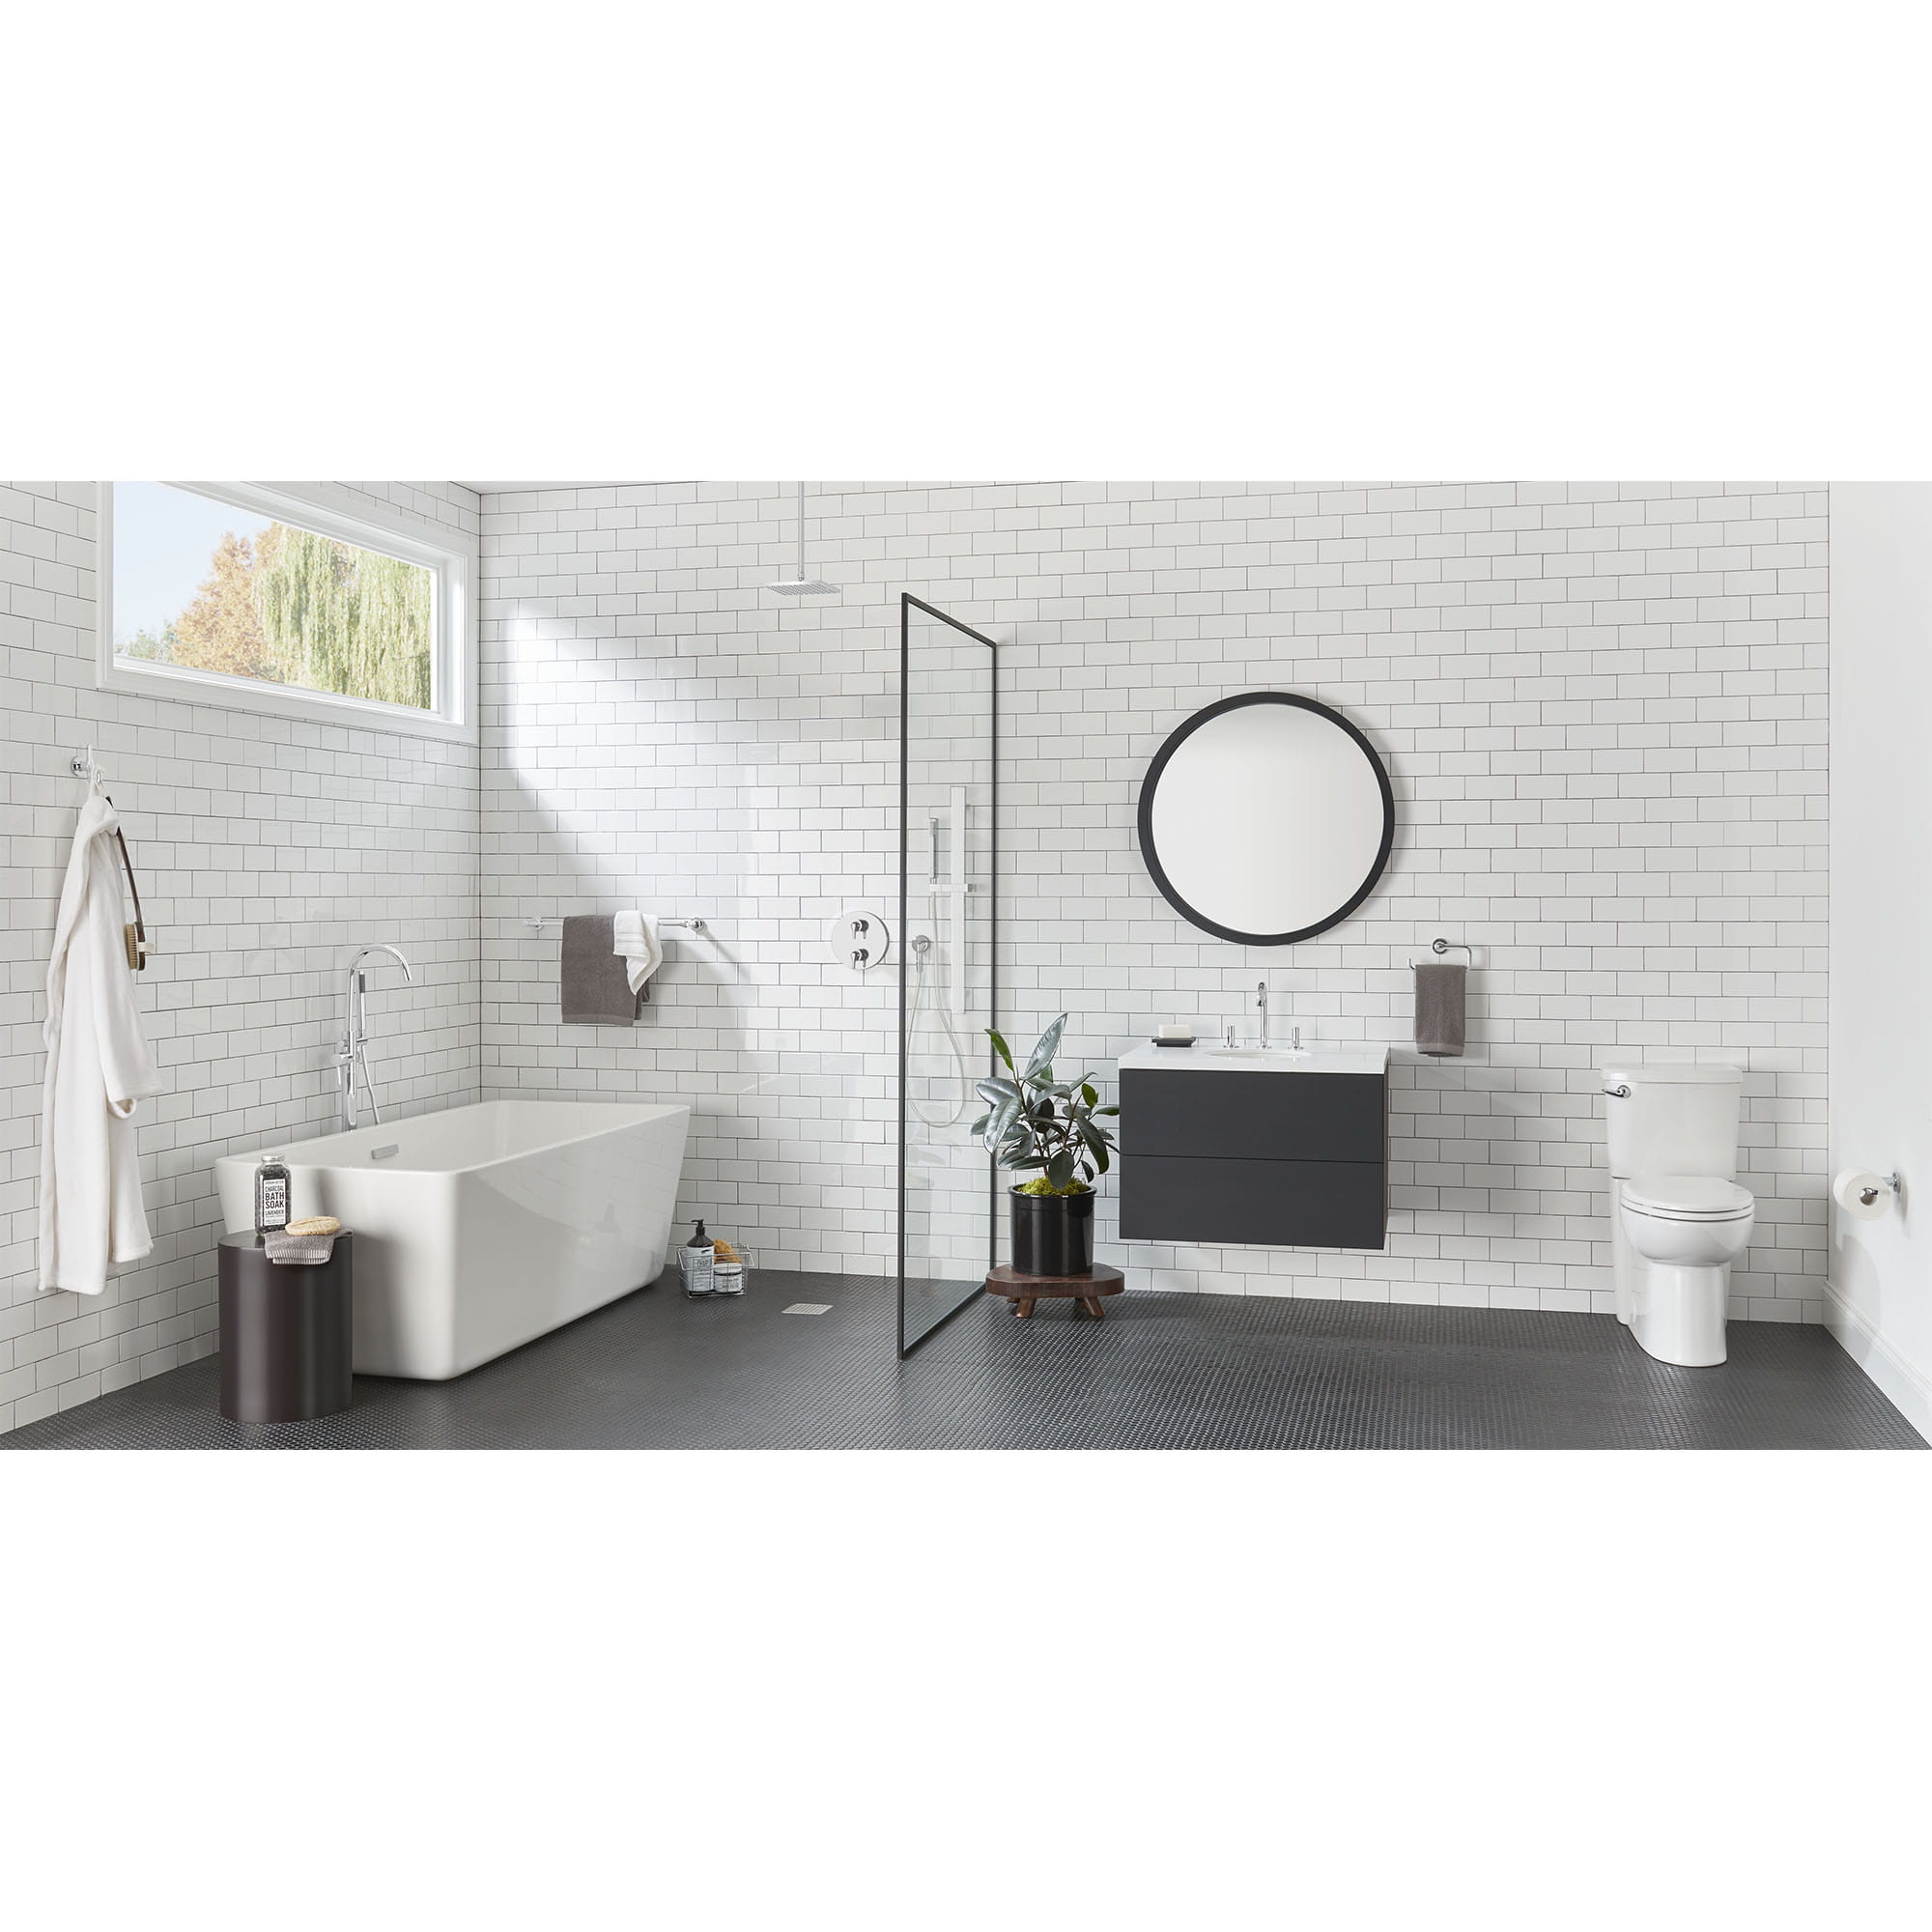 Studio® S - Robinet de salle de bain à 2 poignées espacées de 8 po 1,2 gpm/4,5 L/min avec poignées à levier